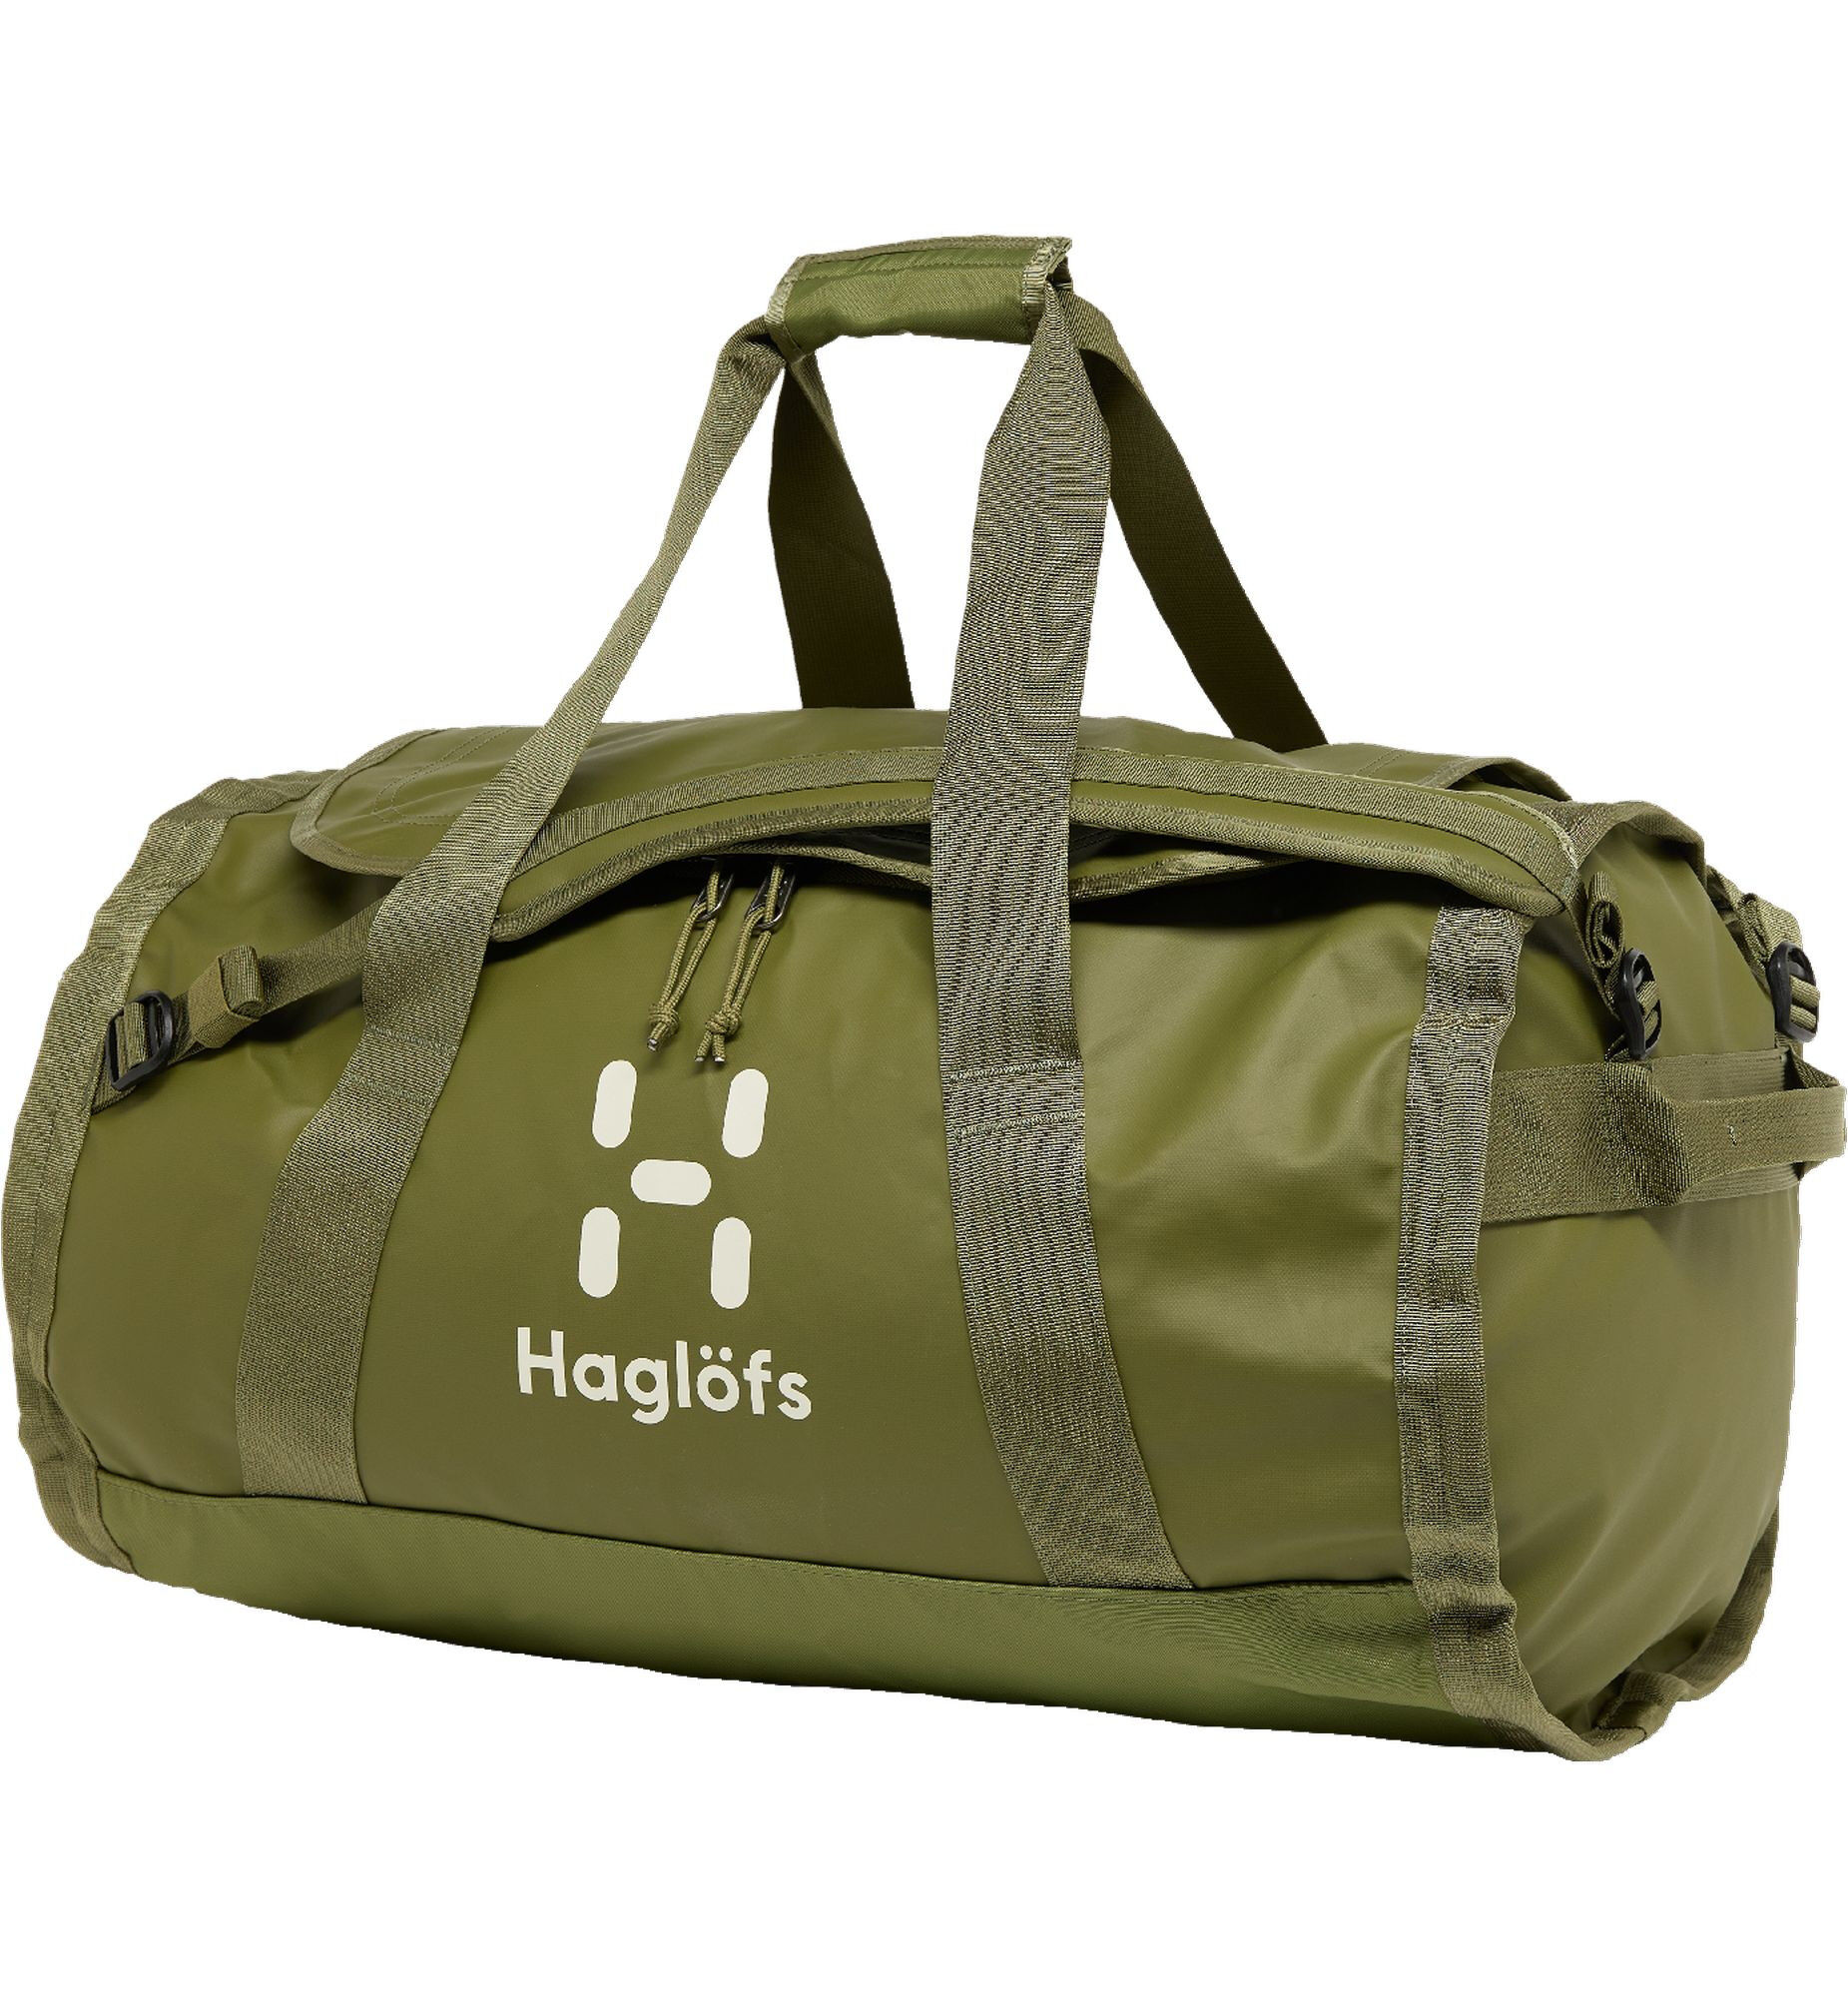 Haglöfs Lava 70 - Hiking backpack | Hardloop